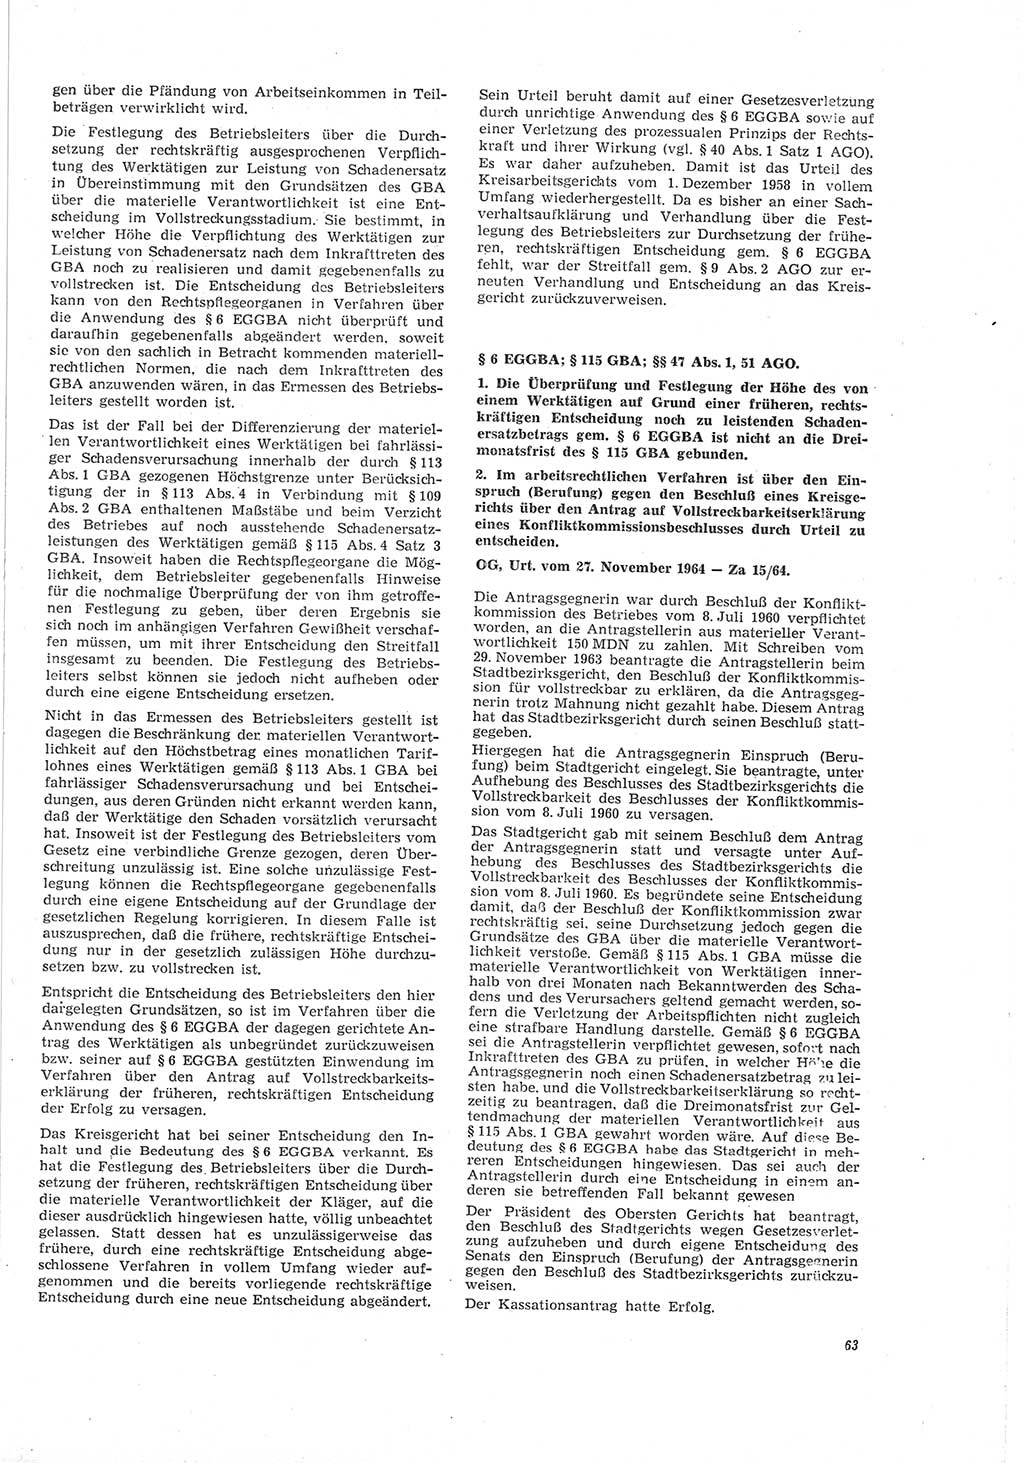 Neue Justiz (NJ), Zeitschrift für Recht und Rechtswissenschaft [Deutsche Demokratische Republik (DDR)], 19. Jahrgang 1965, Seite 63 (NJ DDR 1965, S. 63)